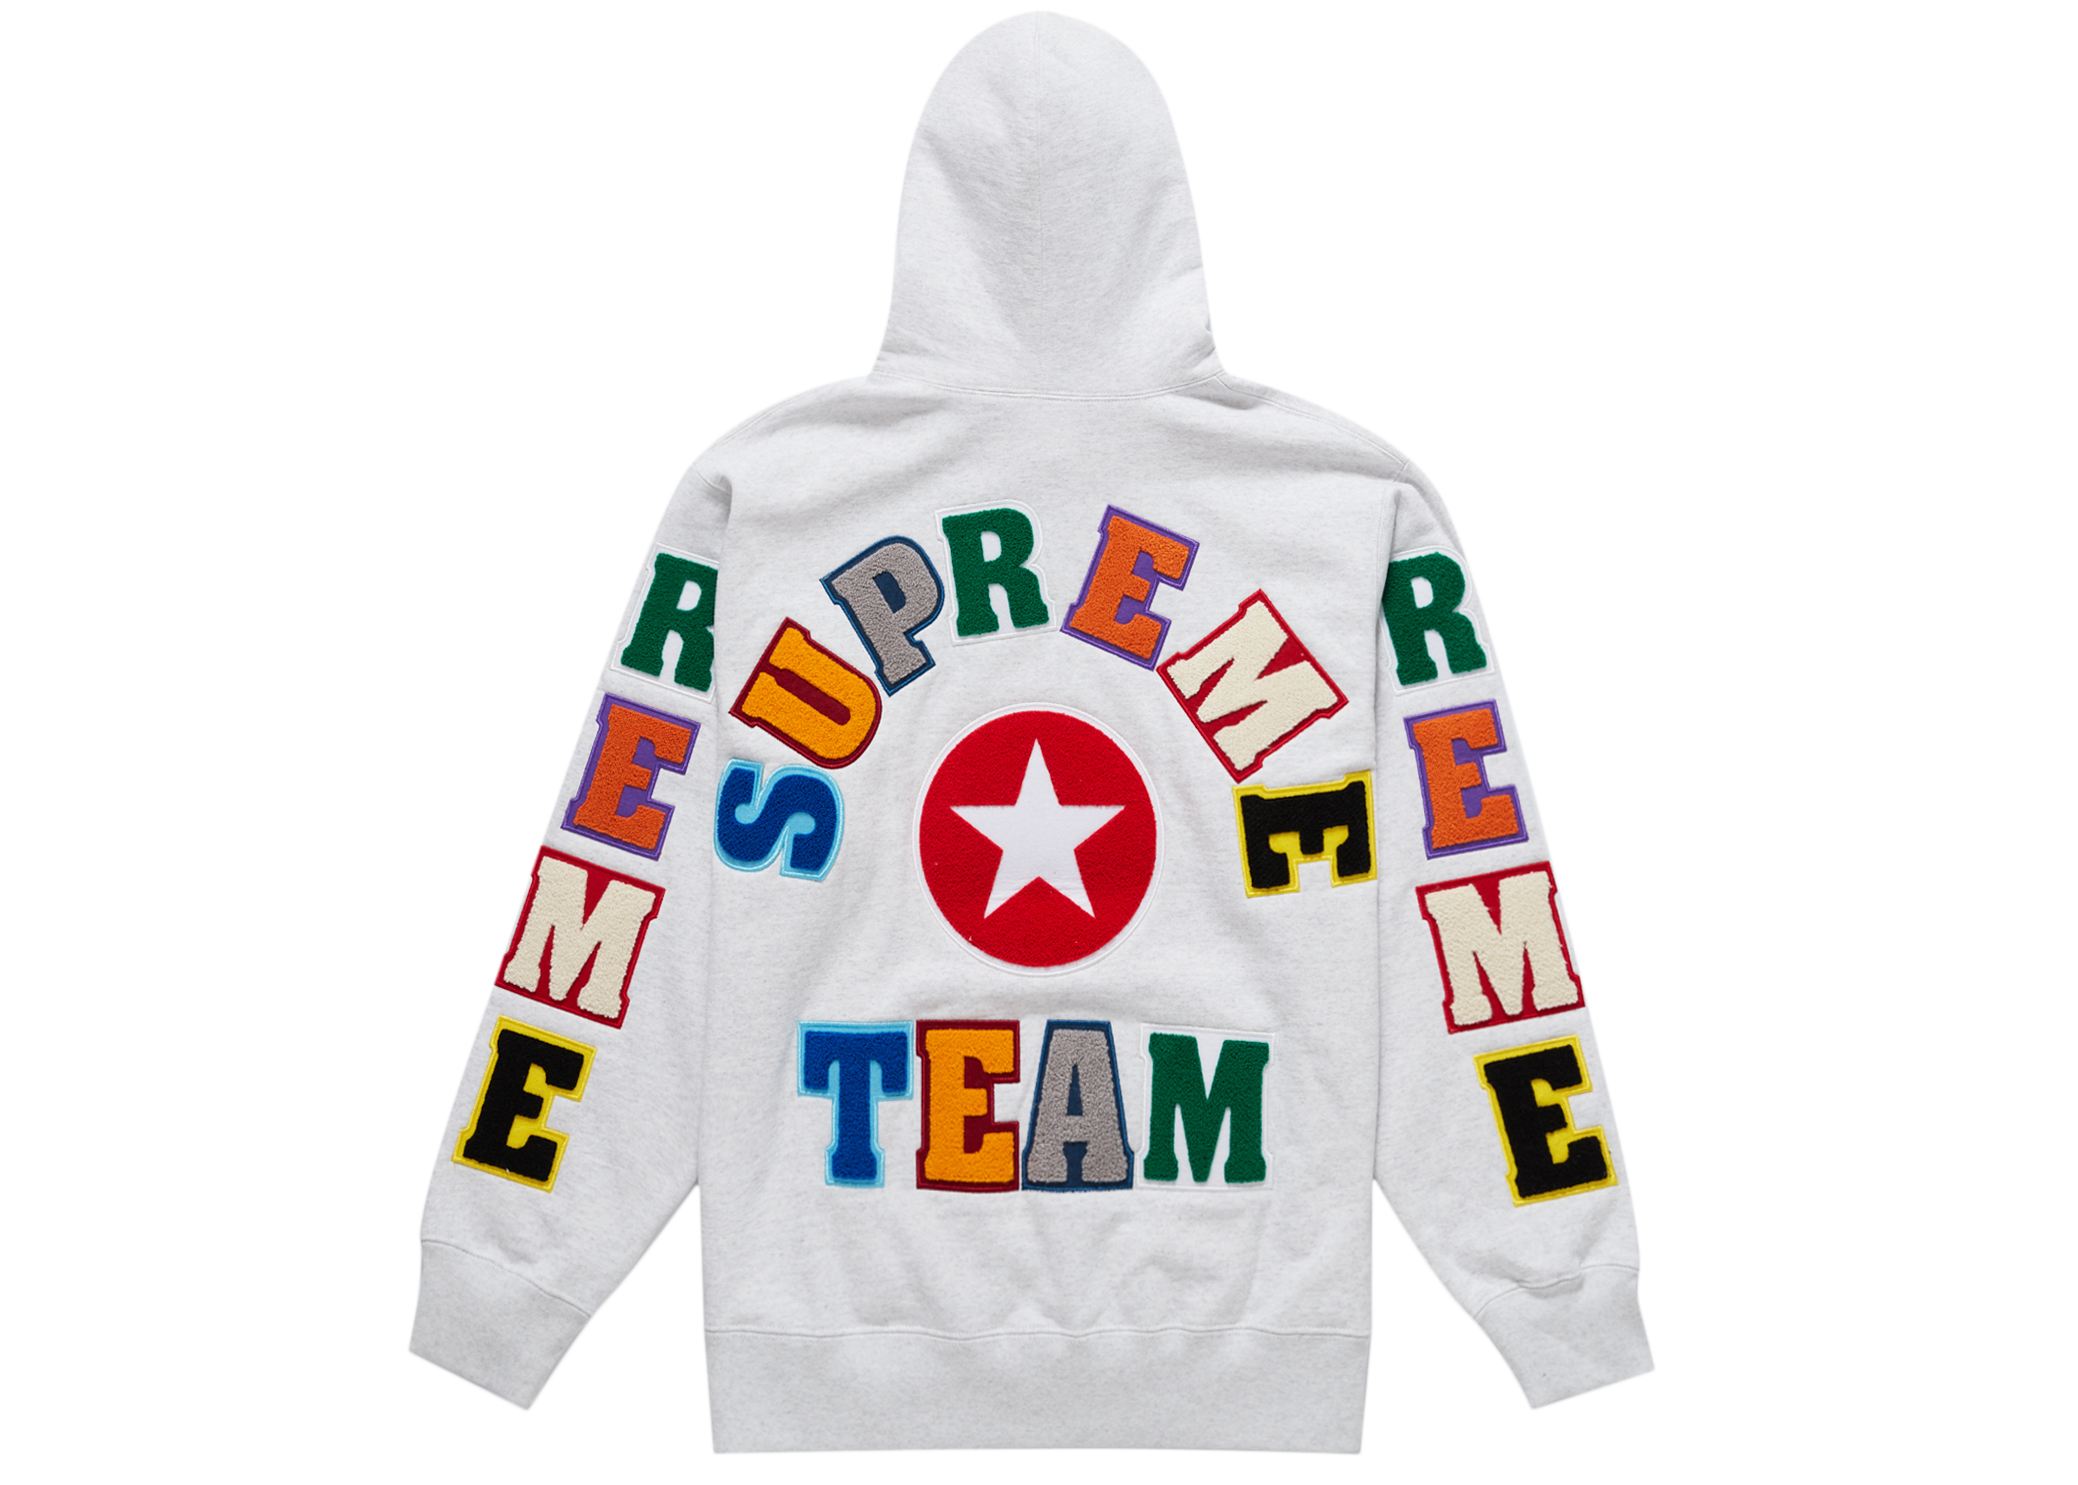 【初売り】 supreme hooded sweatshirt パーカー